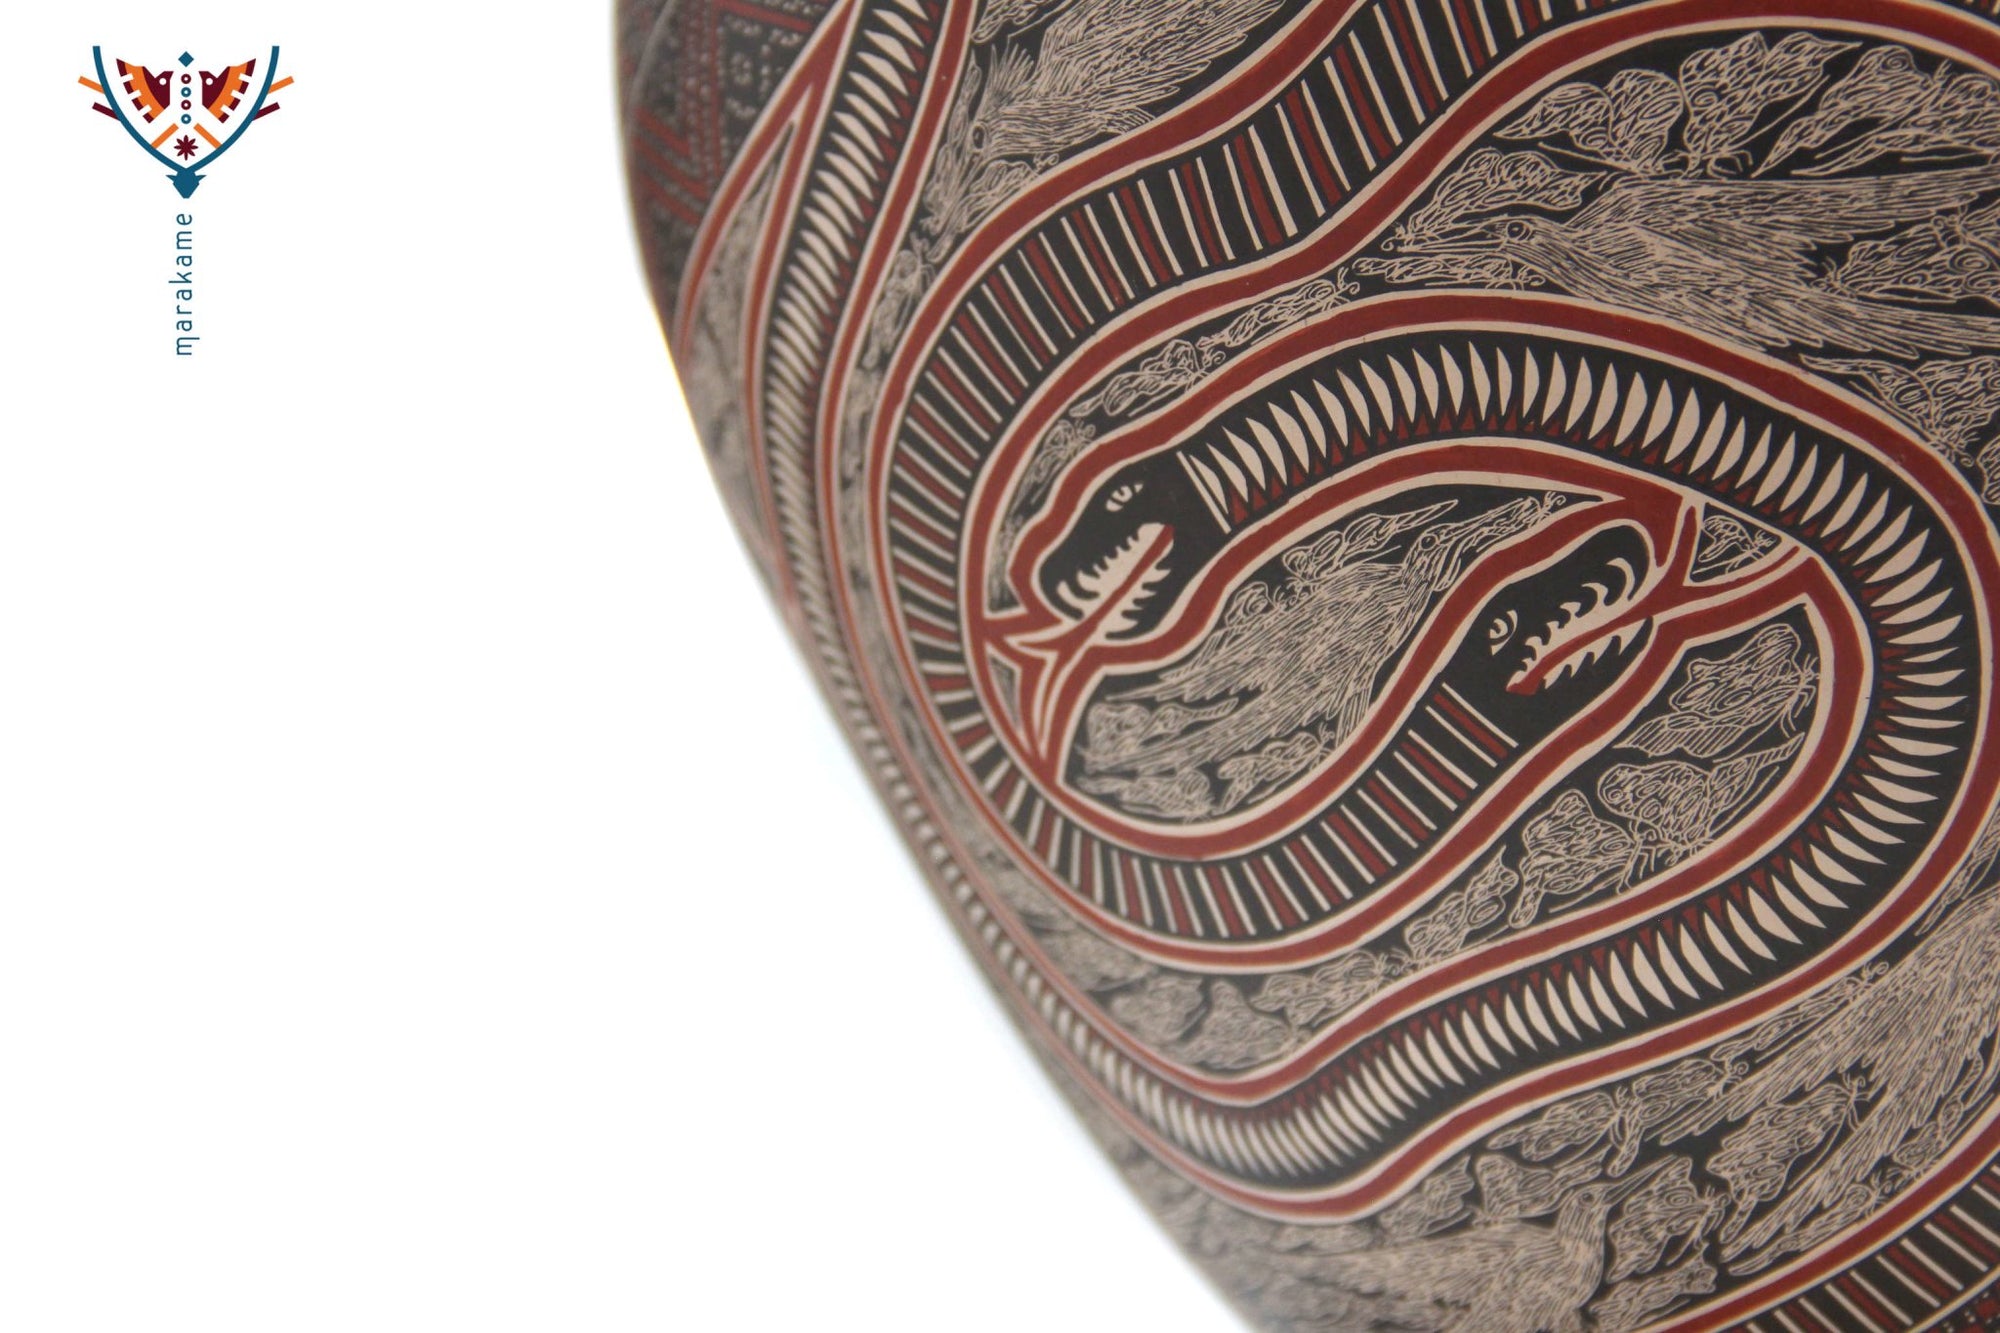 Ceramics of Mata Ortiz - Birds - 3rd place Ceramic Contest 2020 - Huichol Art - Marakame